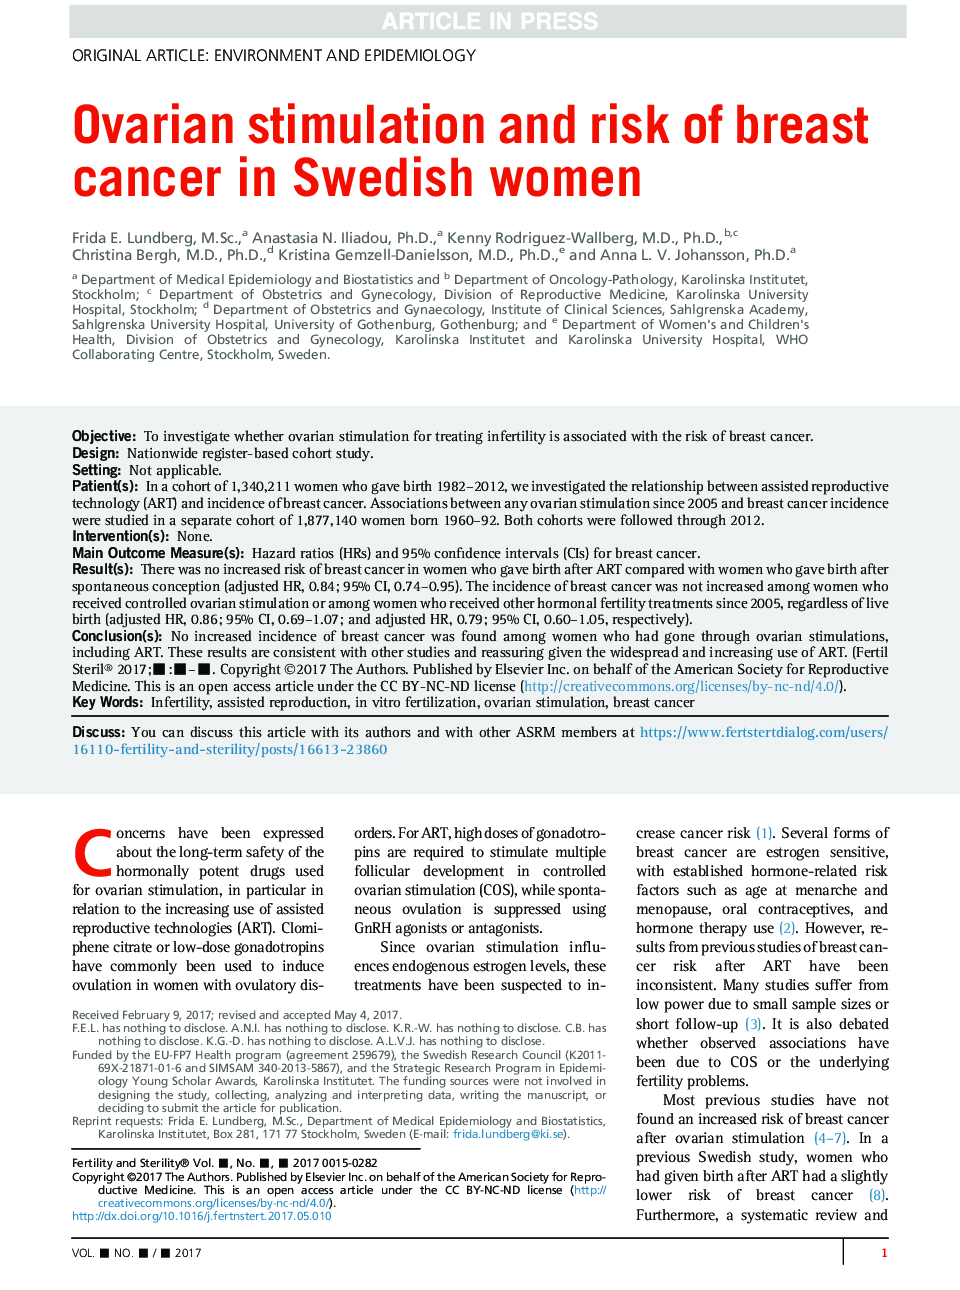 تحریک تخمدان و خطر سرطان پستان در زنان سوئدی 